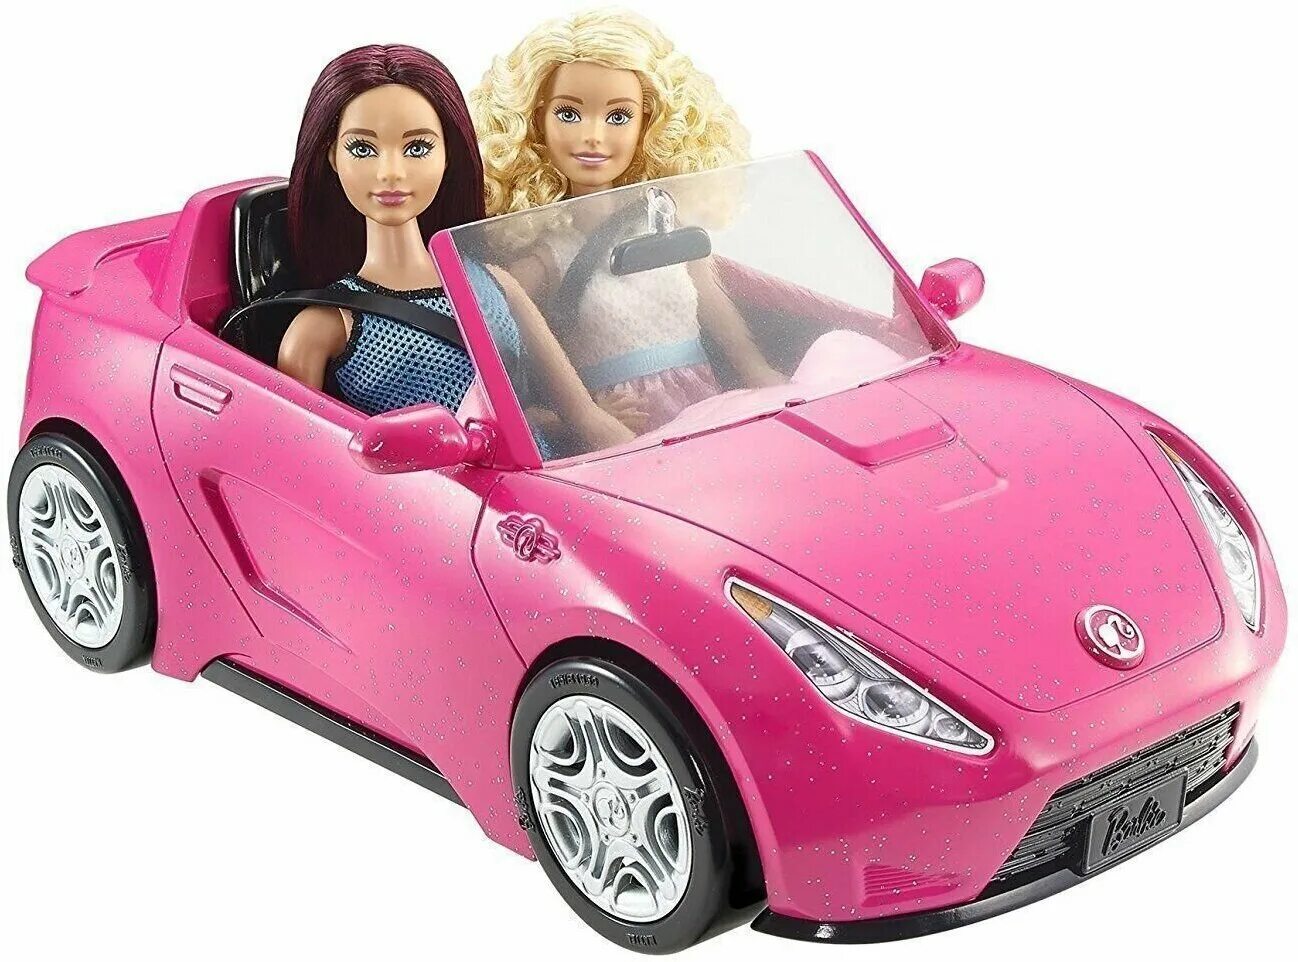 Купить куклы машину. Набор Barbie гламурный кабриолет, djr55. Кабриолет Барби Нордпласт. Барби машина кабриолет 90е. Кукла Барби с машиной.